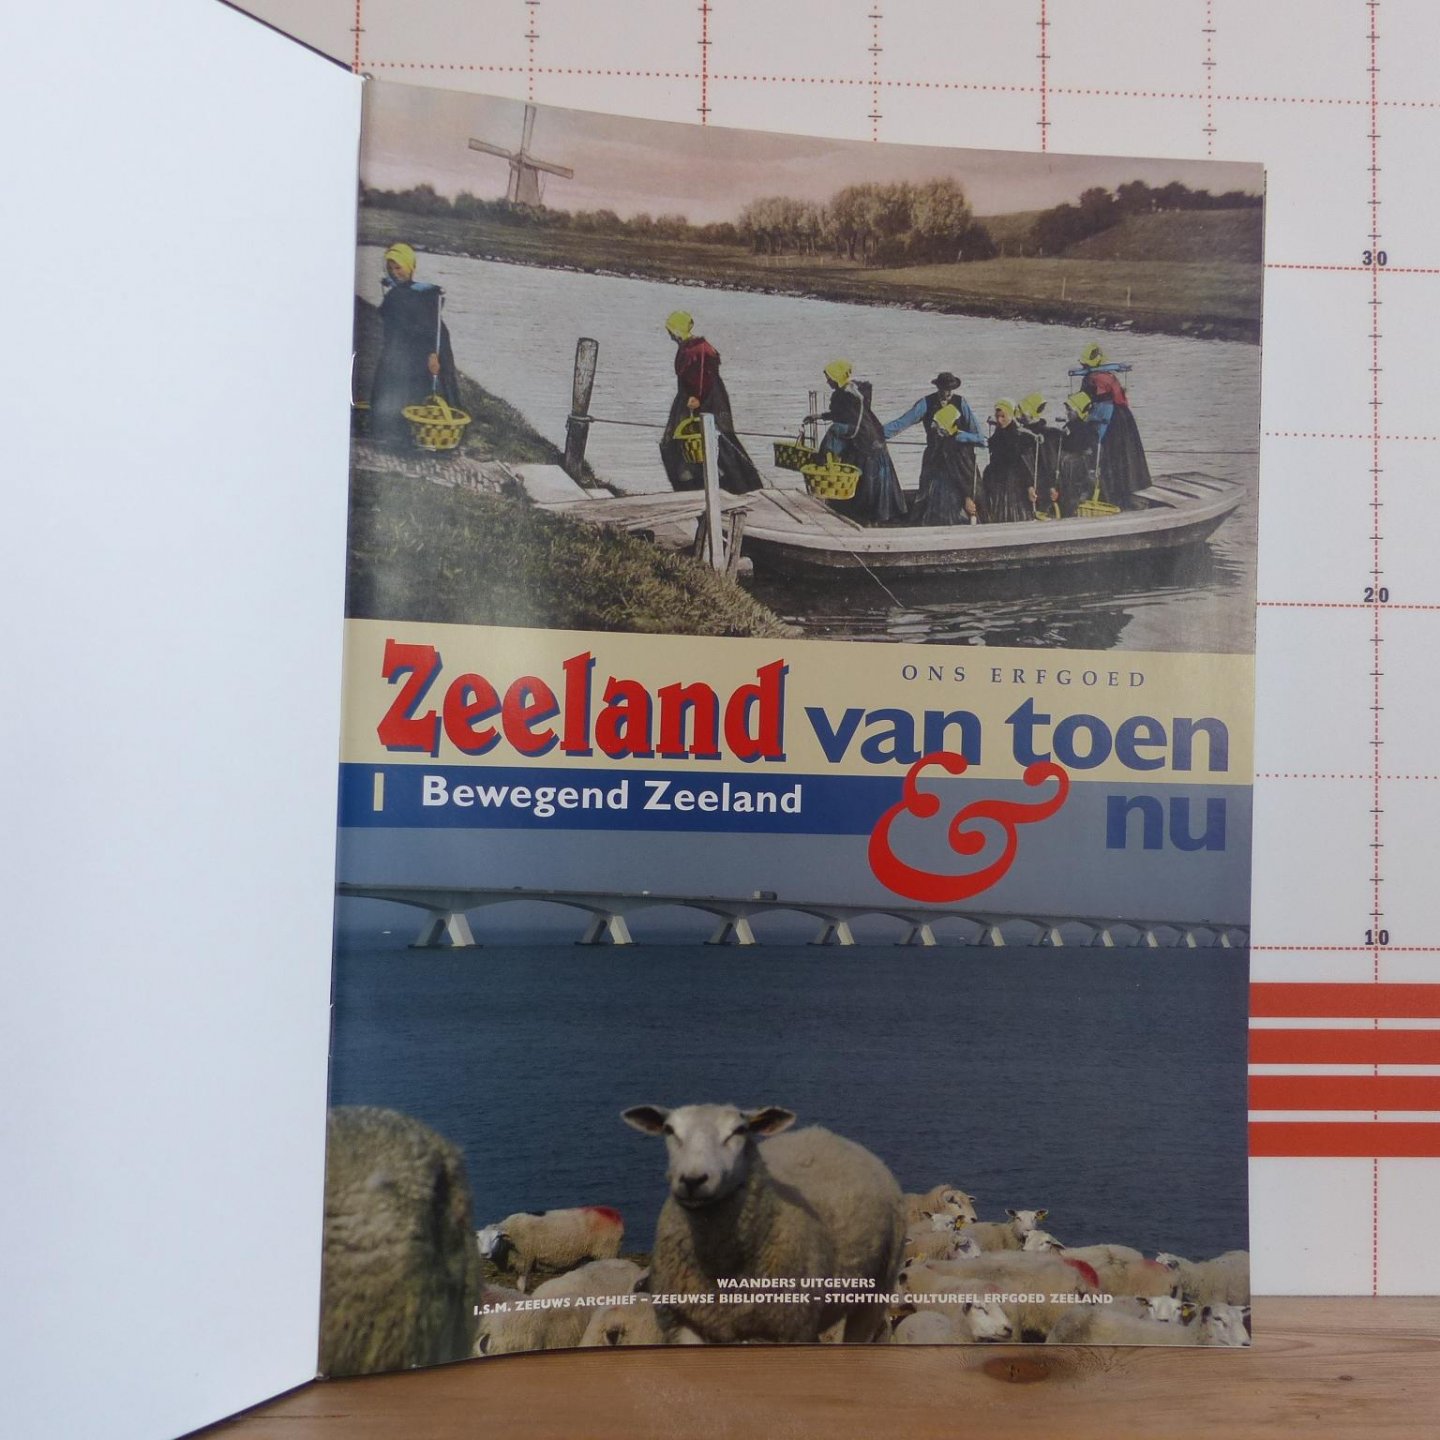 Gelder, Wim. T. van (voorw.) - ons erfgoed - Zeeland van toen en nu / deel 1 bewegend Zeeland t/m deel 16 cultuurminnend Zeeland